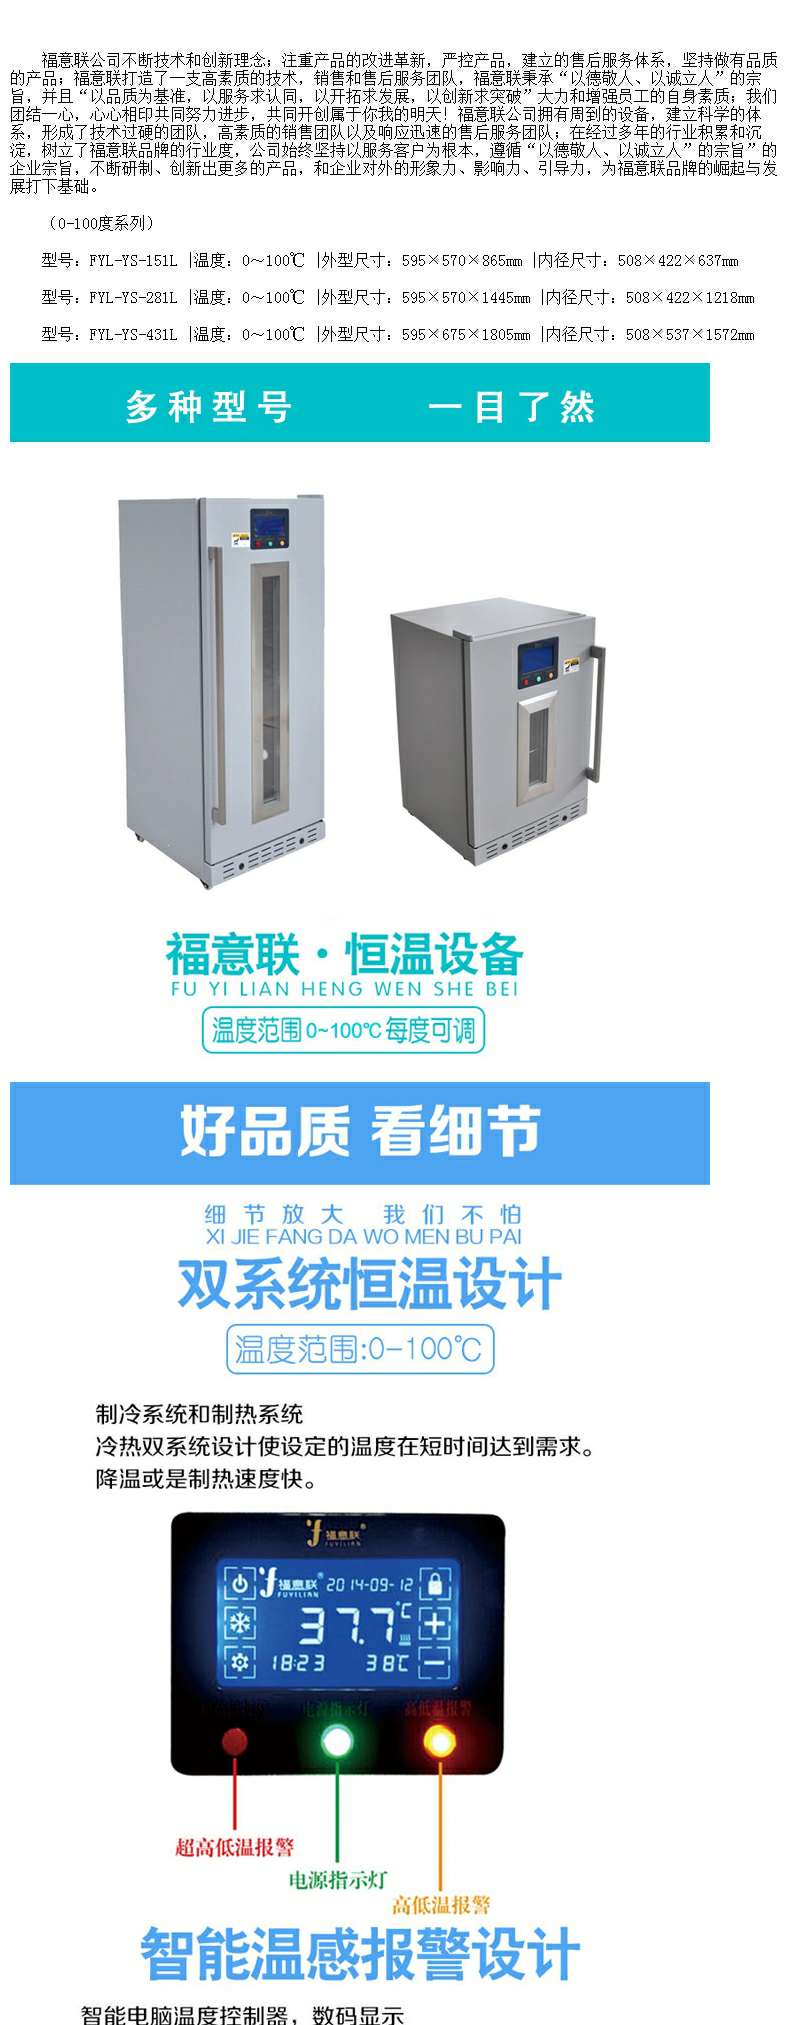 保冷柜规格容积88l,温控范围2-8摄氏度；尺寸长小于等于480mm，宽小于等于470mm，高小于等于840mm